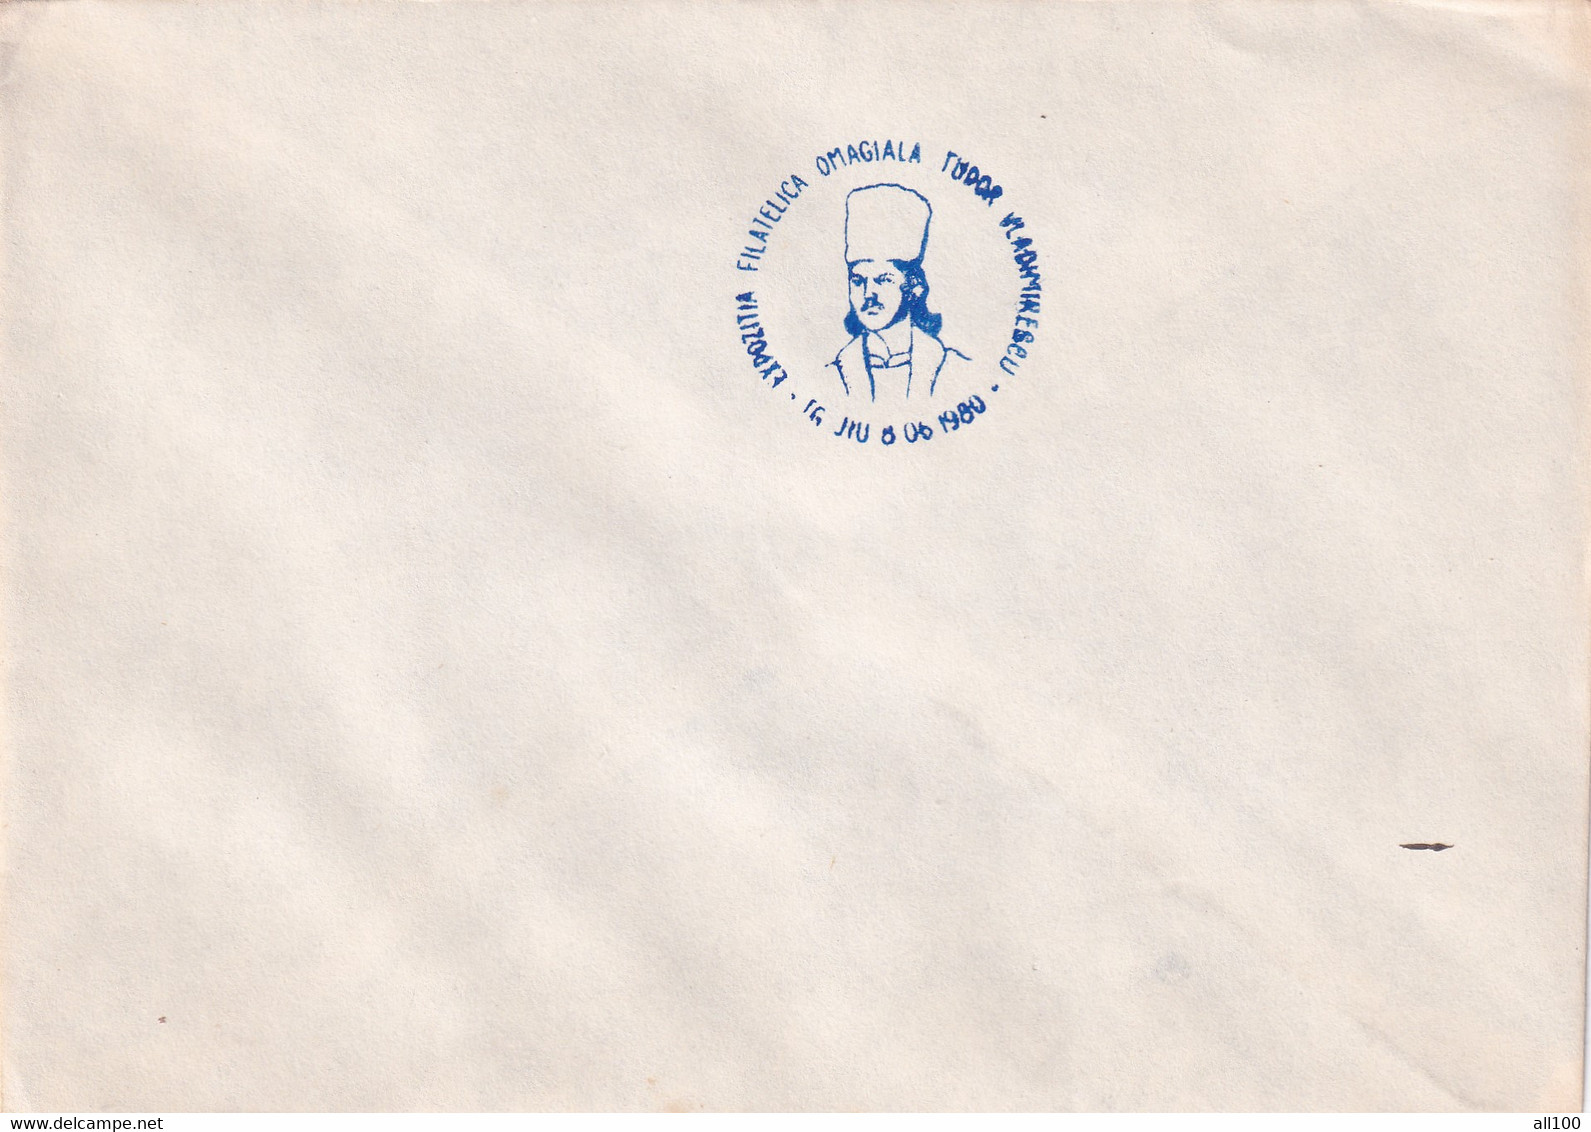 A19364 - EXPOZITIA FILATELICA OMAGIALA TUDOR VLADIMIRESCU COVER ENVELOPE UNUSED 1980 REPUBLICA SOCIALISTA ROMANIA RSR - Lettres & Documents